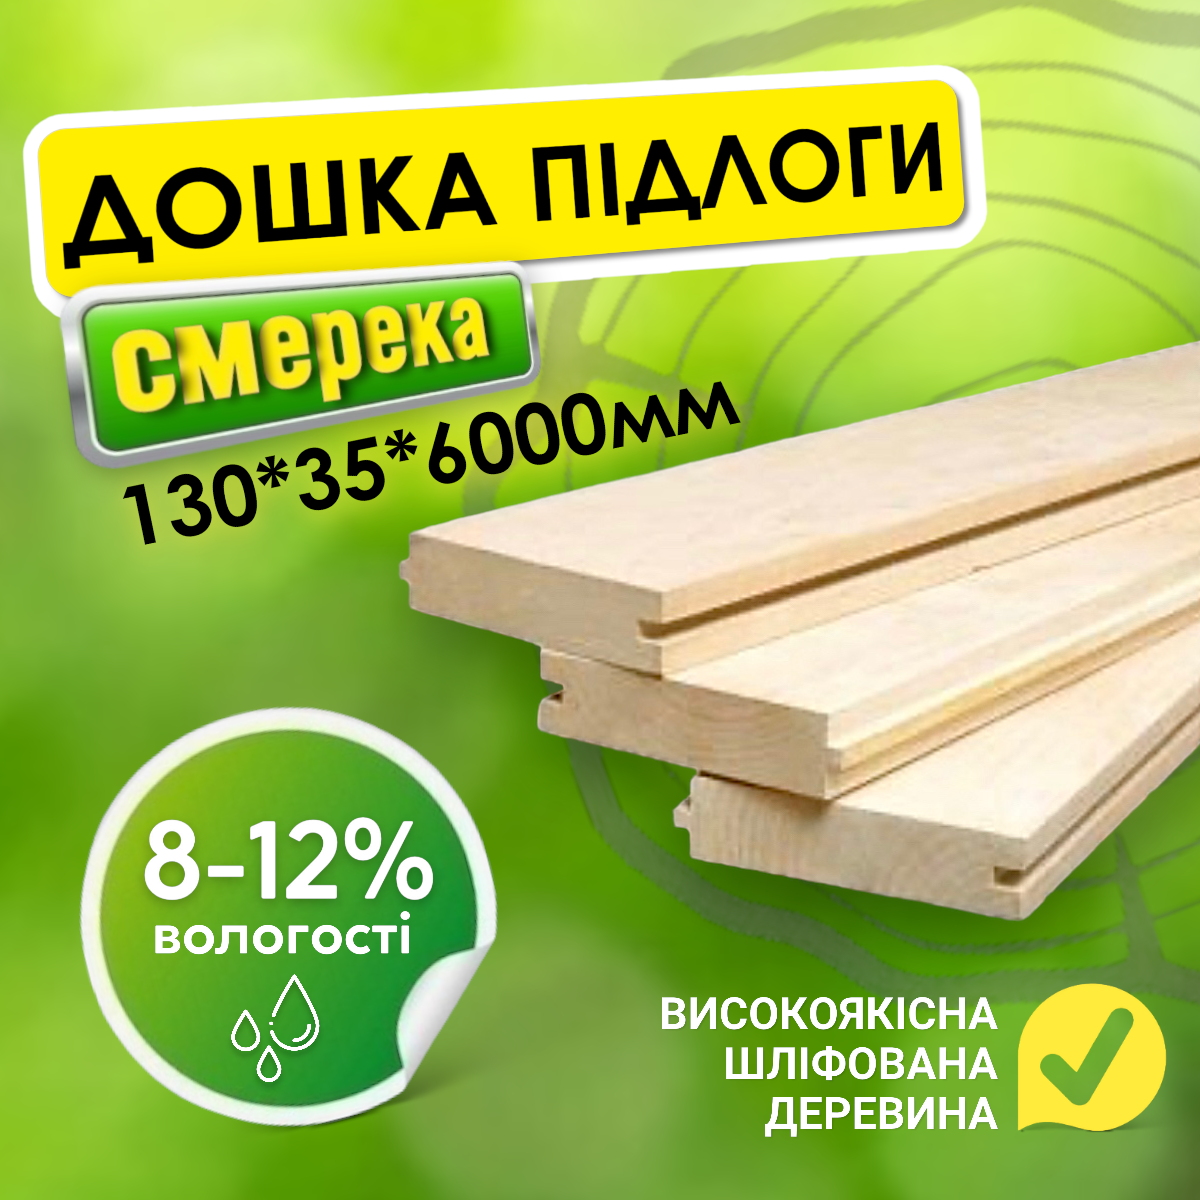 ✅ Високоякісна натуральна дерев'яна підлога шліфувальна дошка для підлоги 130*35*6000 мм від виробника